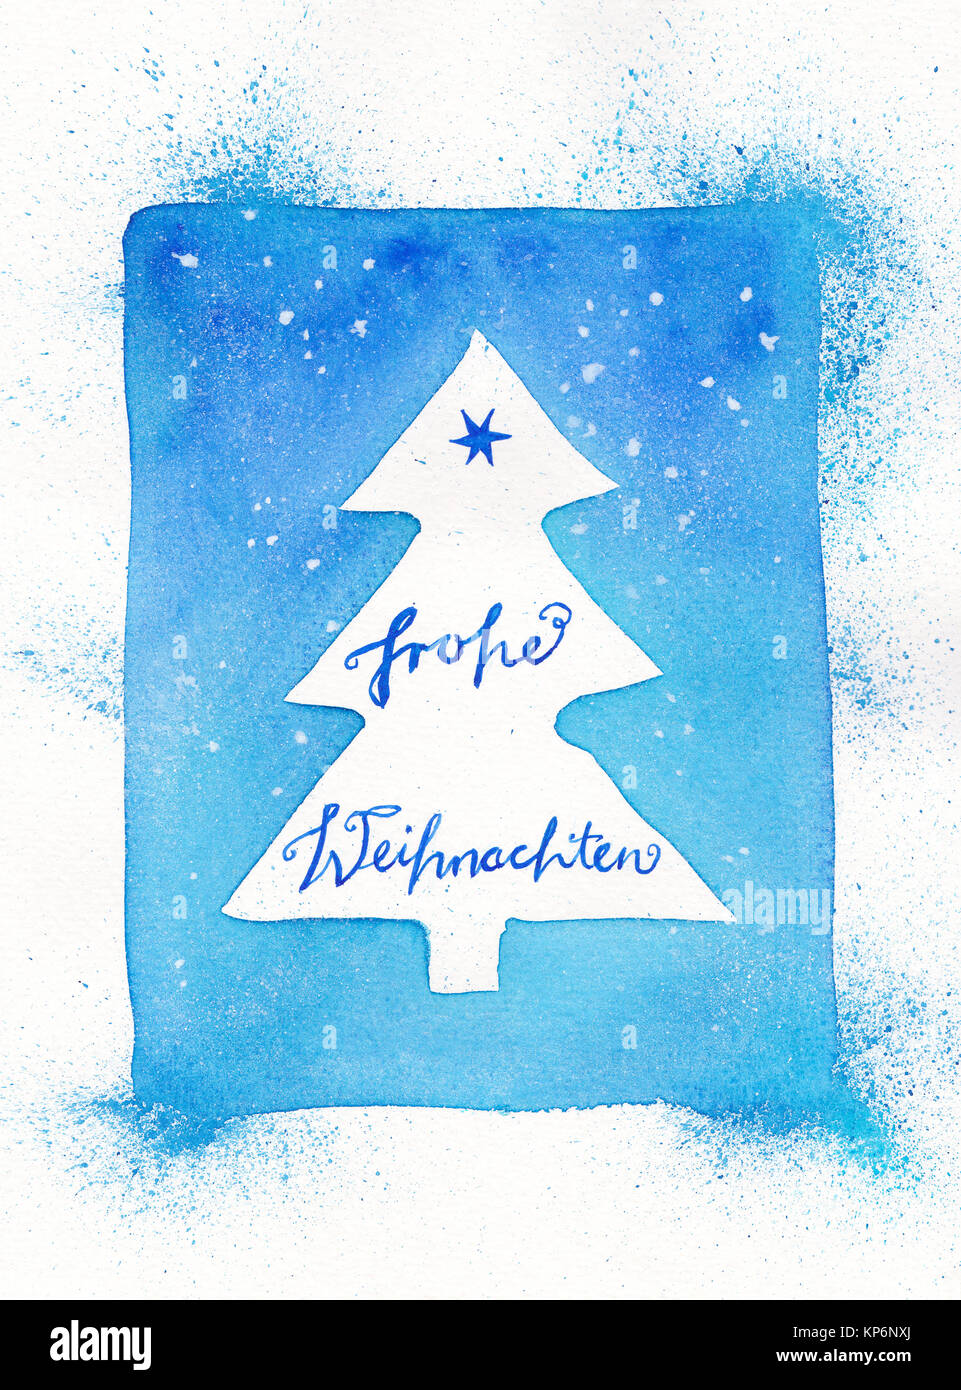 Entouré d'arbres de Noël résumé de l'aquarelle avec texte allemand : Frohe Weihnachten Banque D'Images